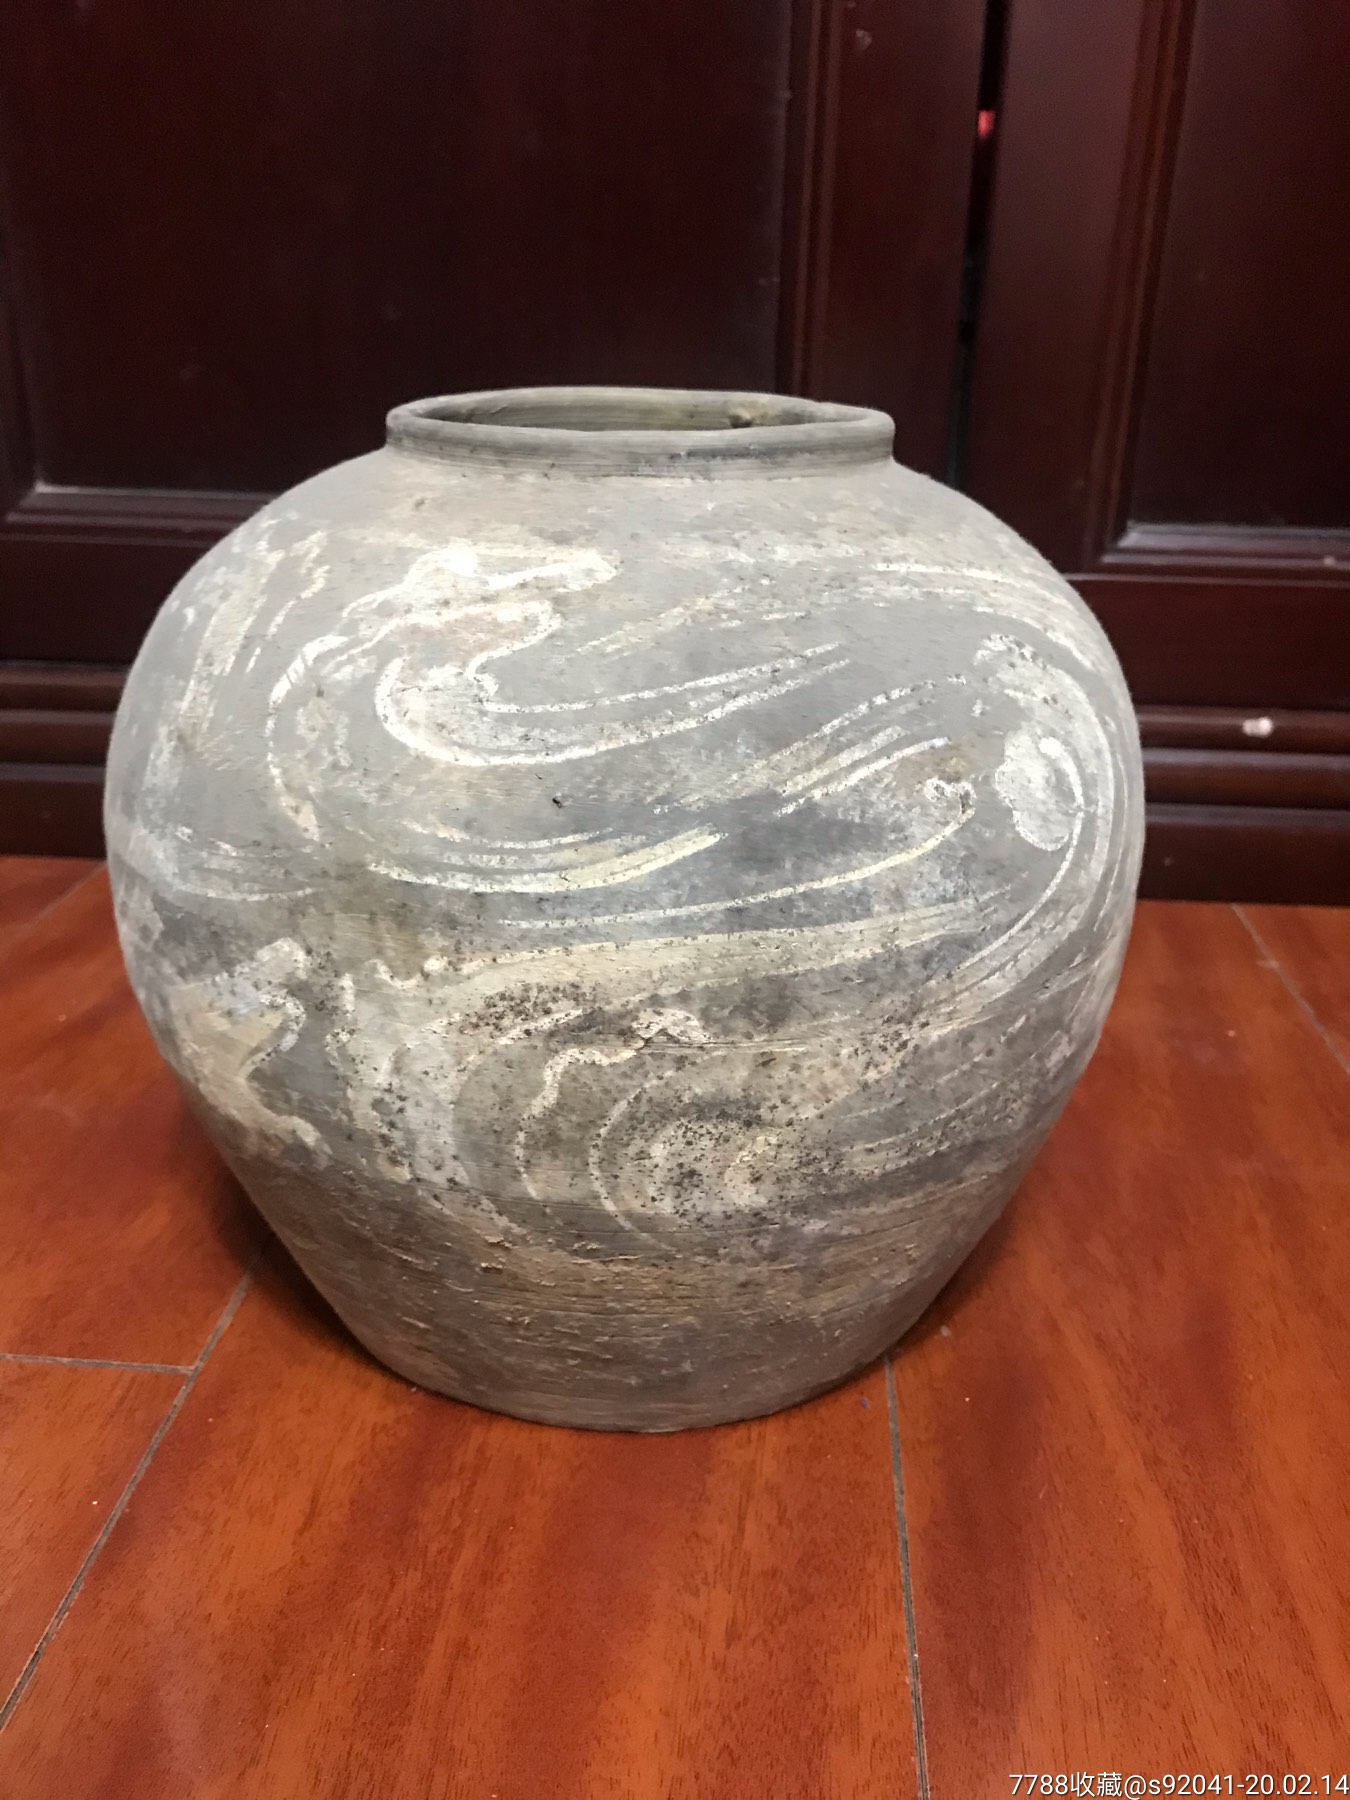 汉代彩绘茧形陶罐价格图片